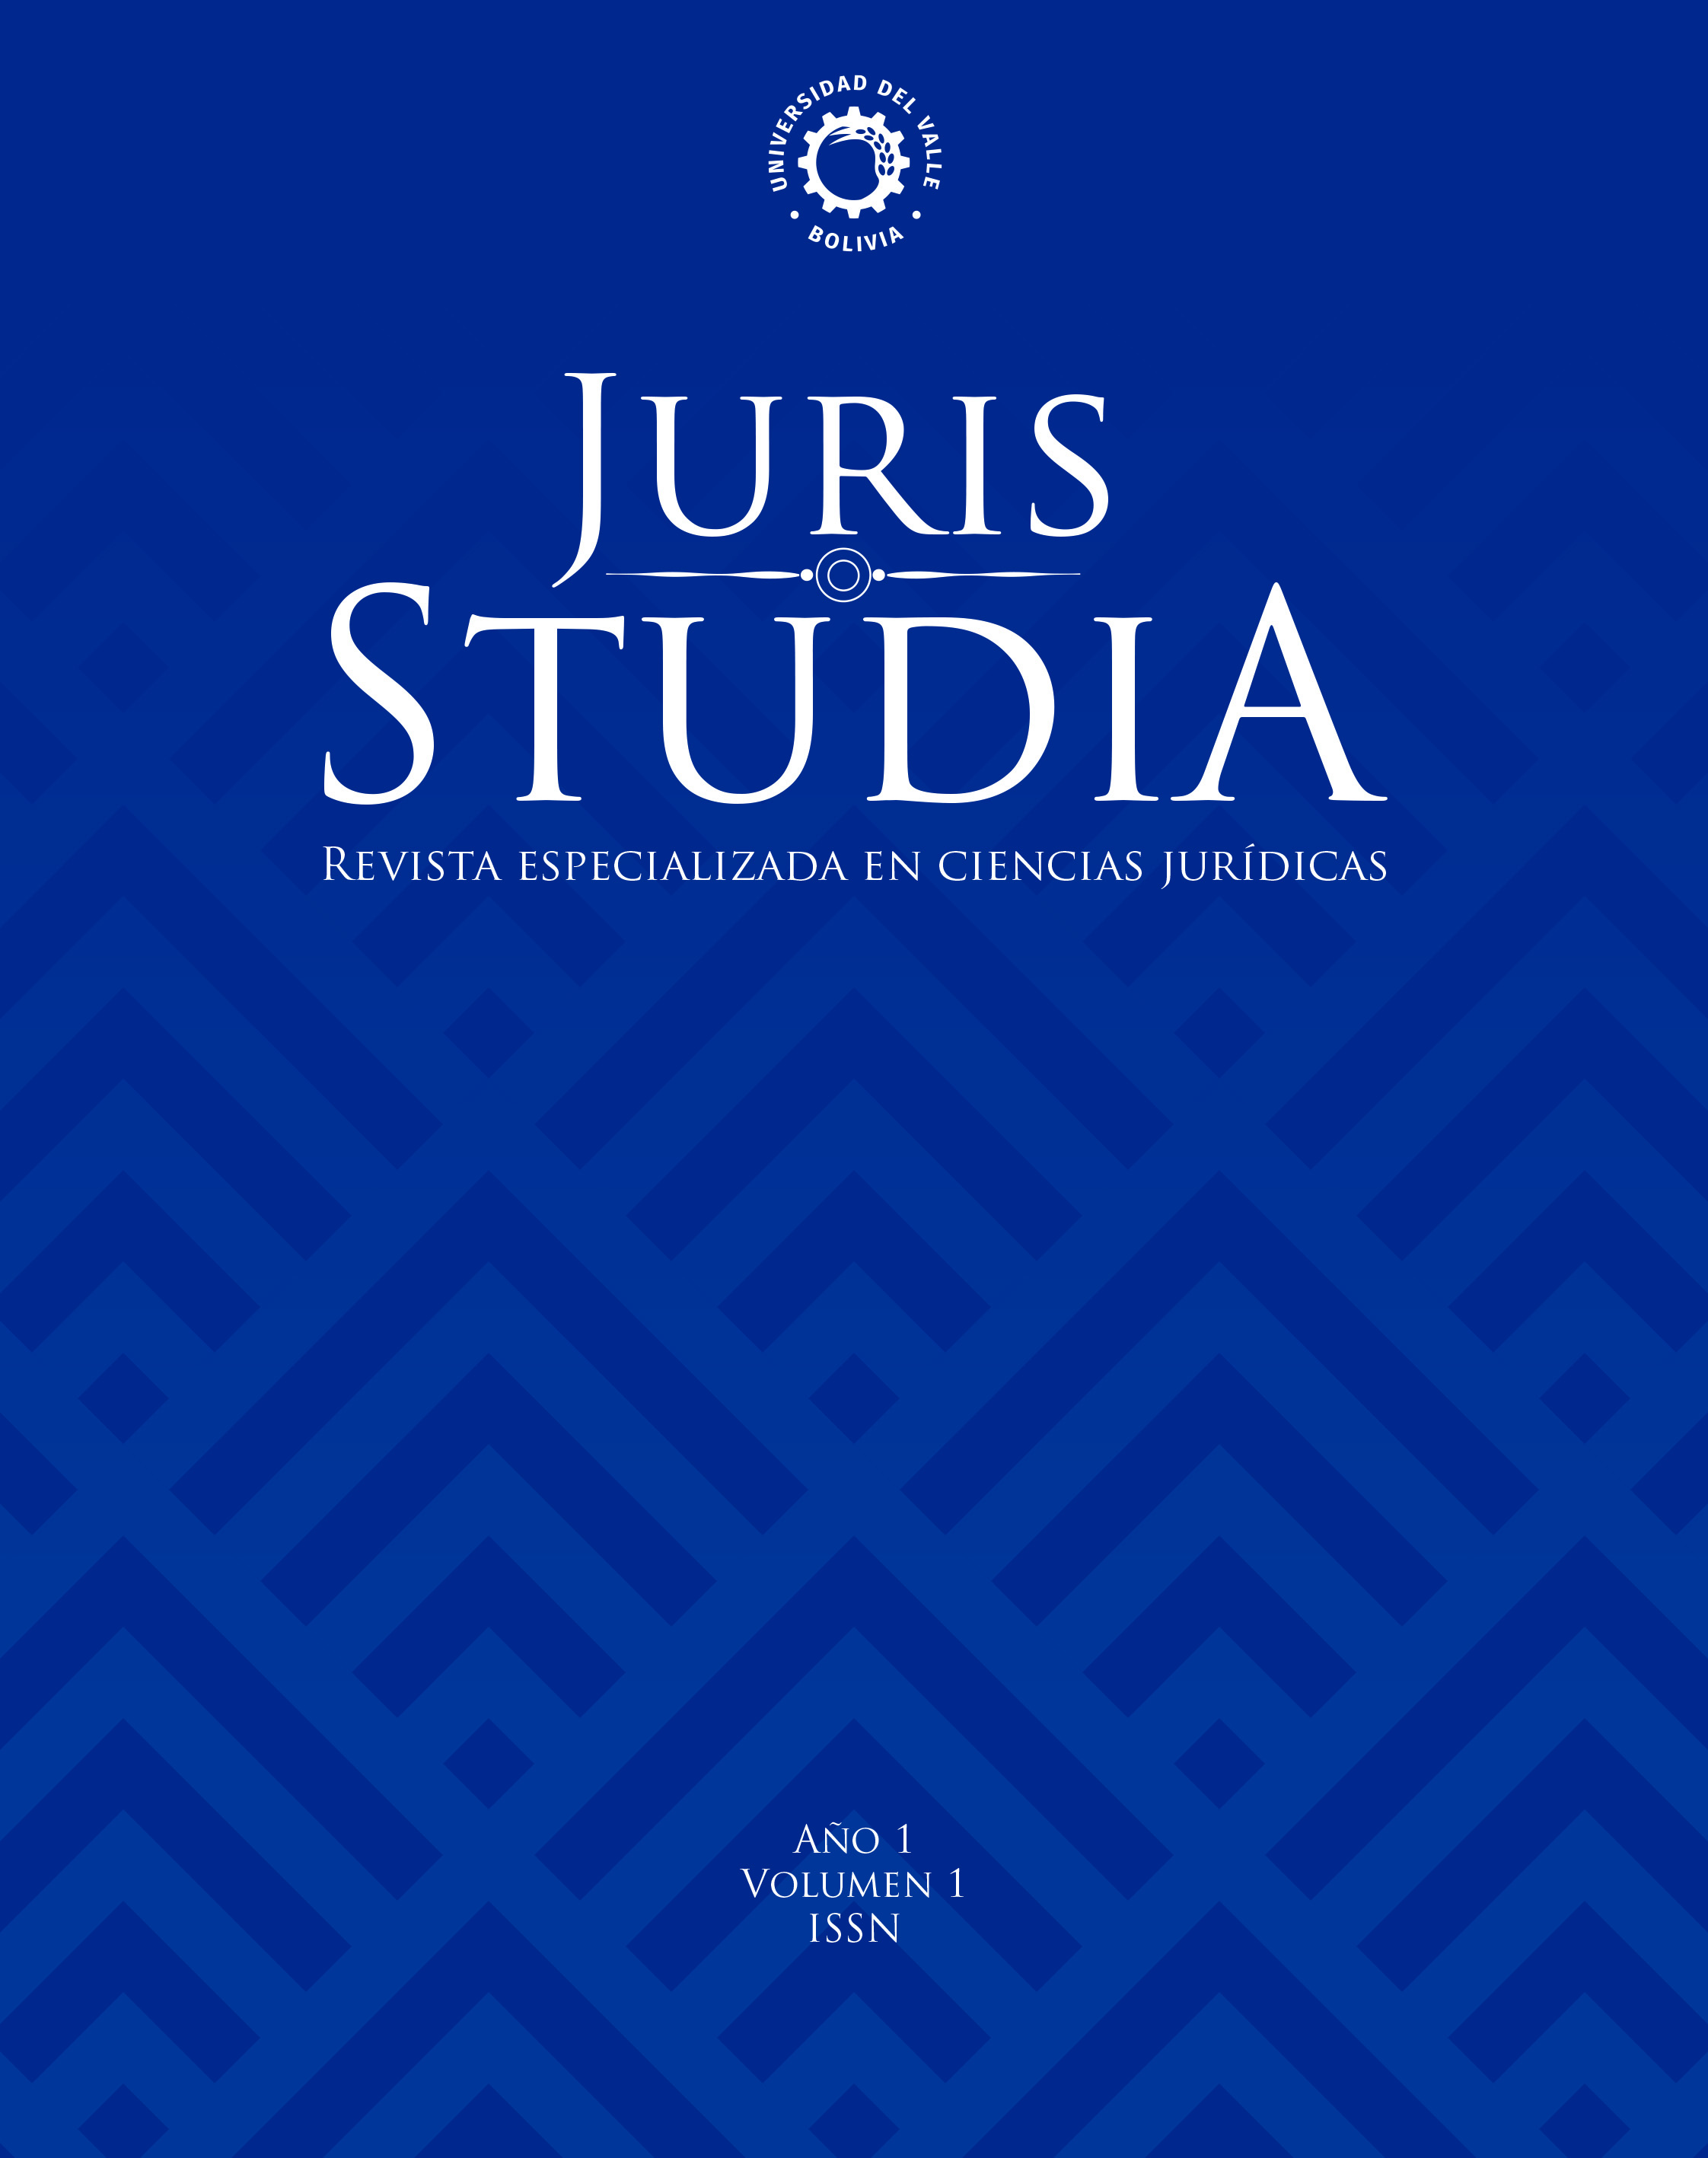 					Ver Vol. 1 Núm. 1 (1): JURIS STUDIA: Revista especializada en ciencias jurídicas
				